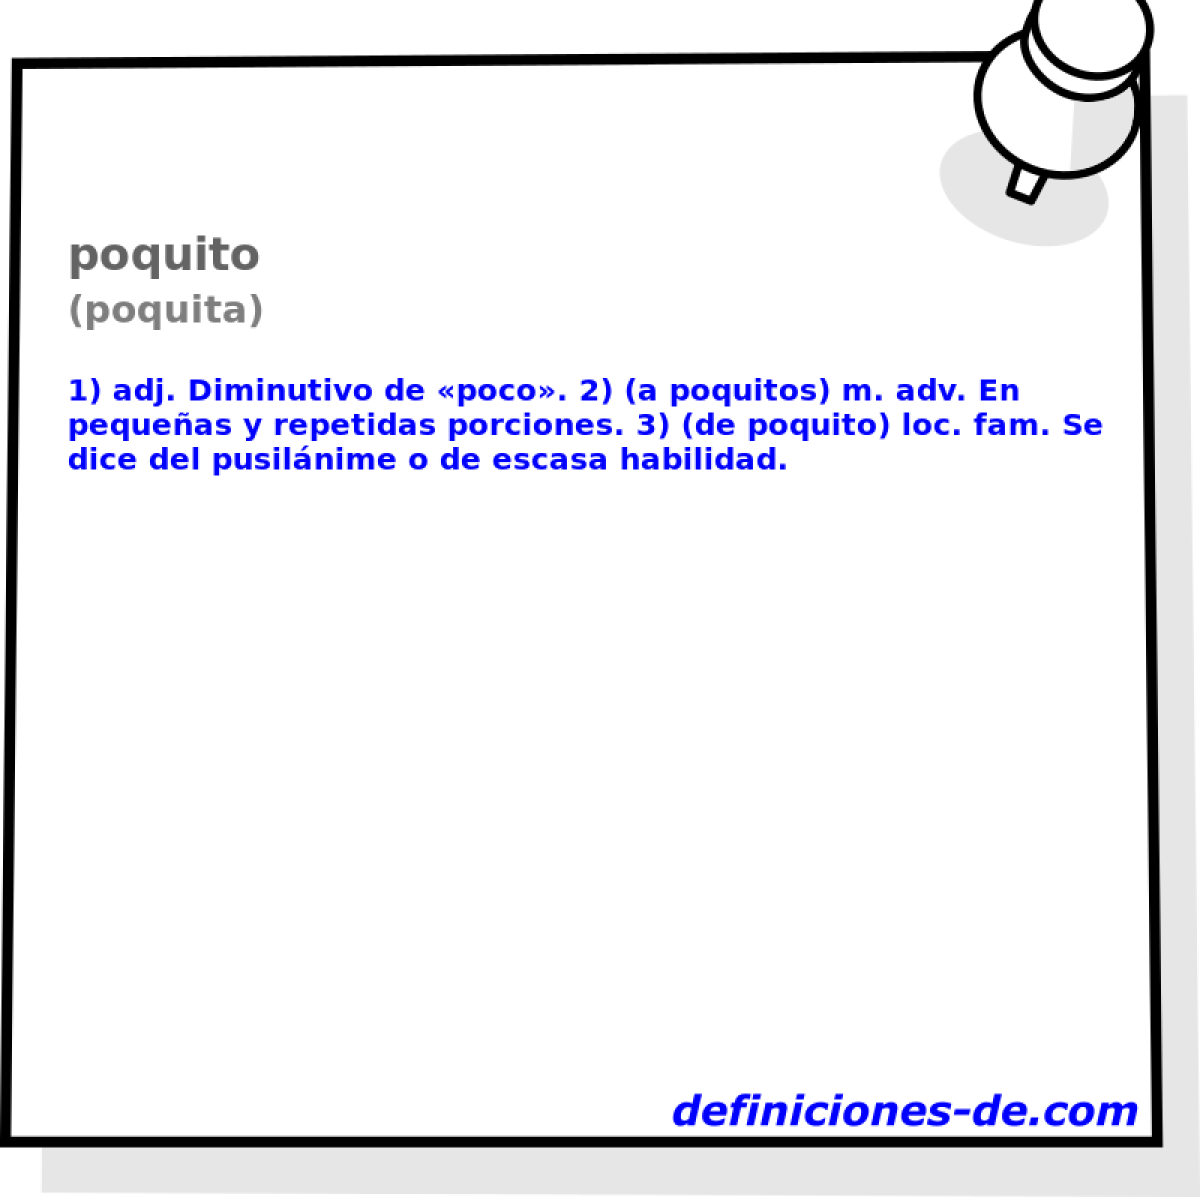 poquito (poquita)